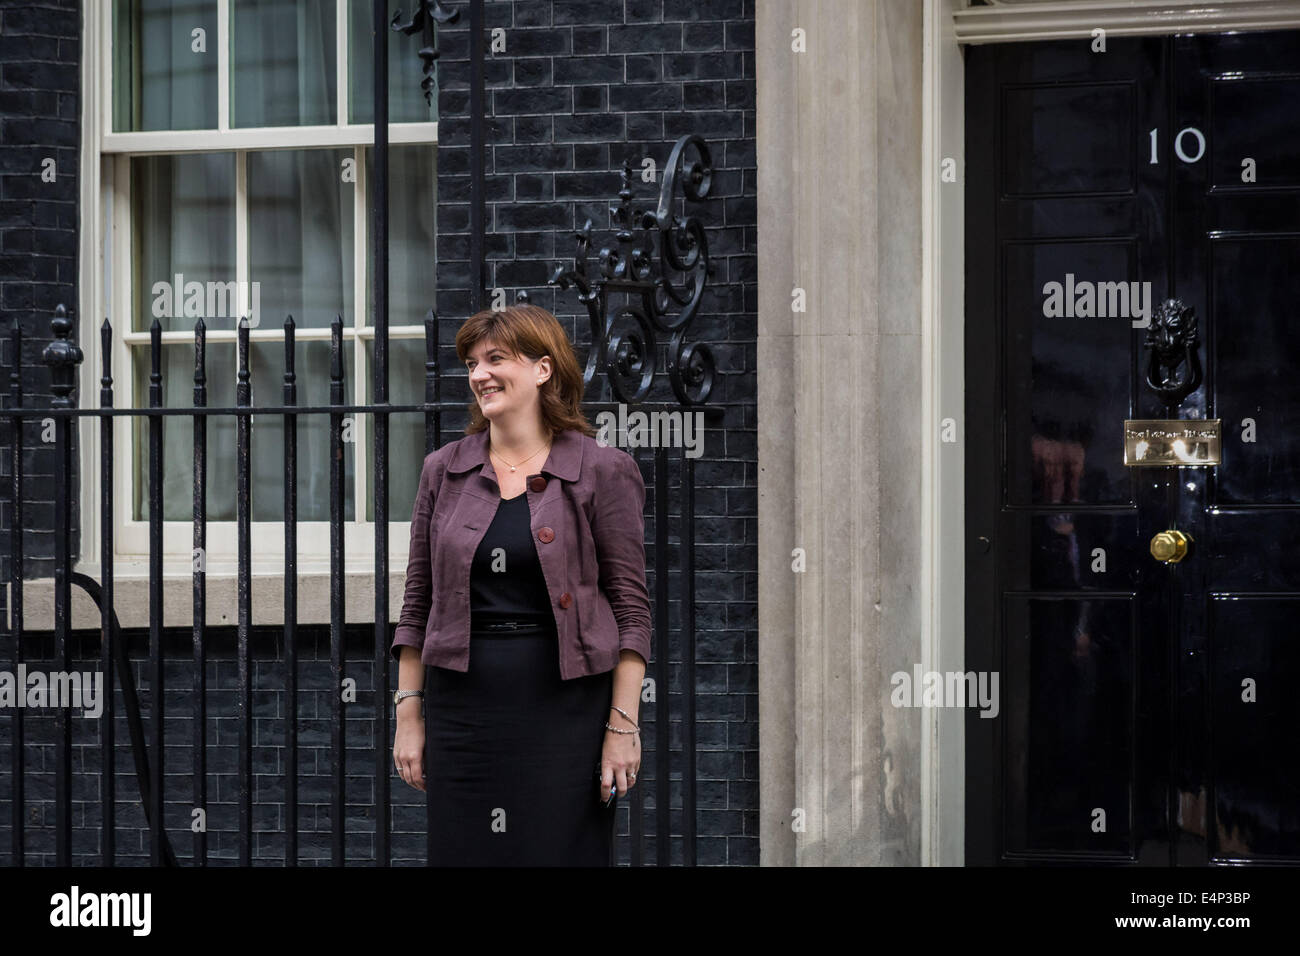 Londres, Reino Unido. El 15 de julio de 2014. El Primer Ministro David Cameron anuncia la reorganización ministerial de crédito: Guy Corbishley/Alamy Live News Foto de stock